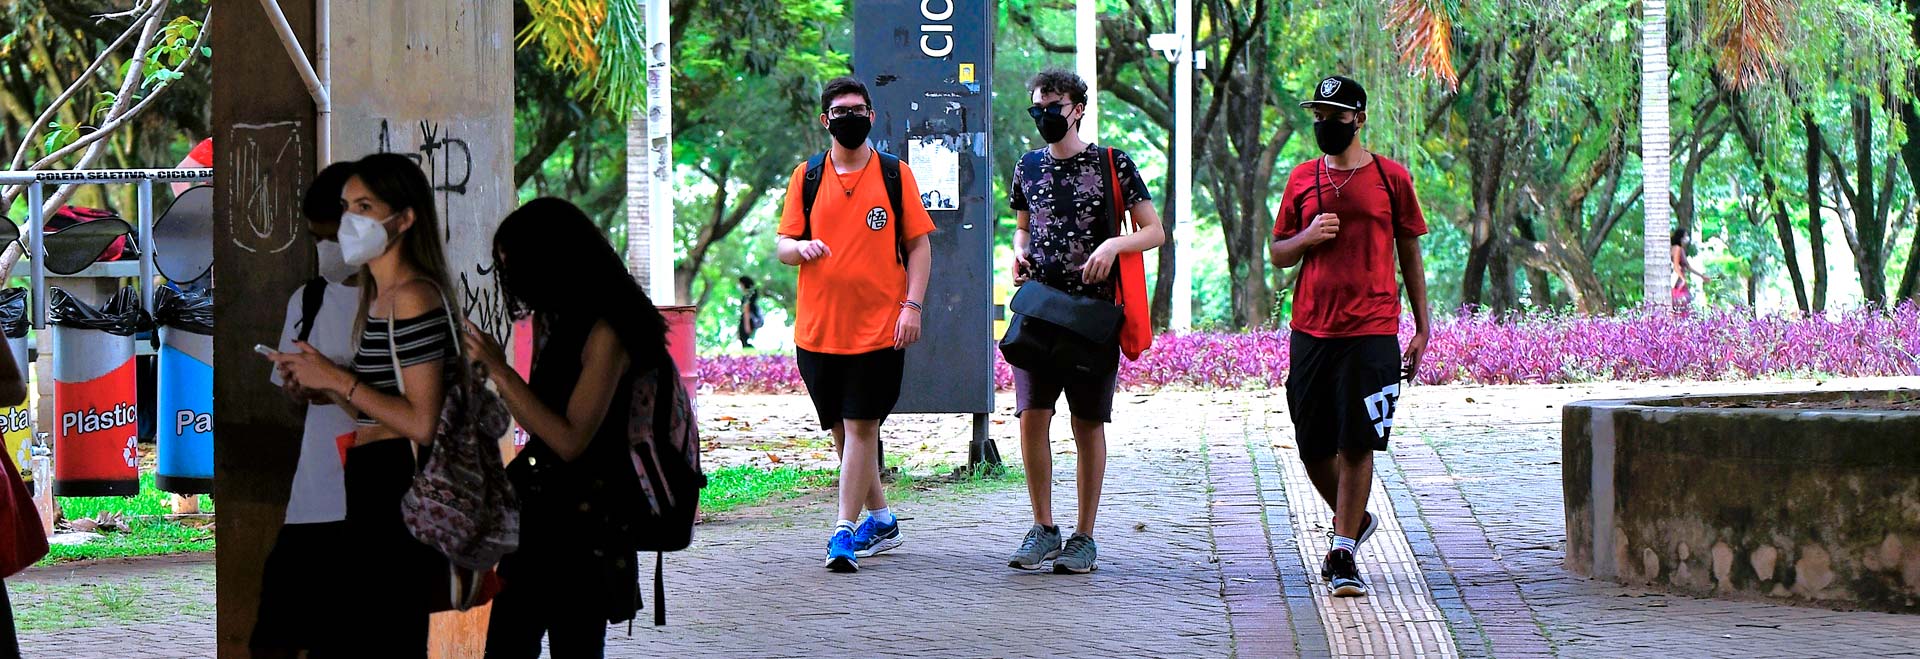 audiodescrição: fotografia colorida de estudantes caminhando pelo campus